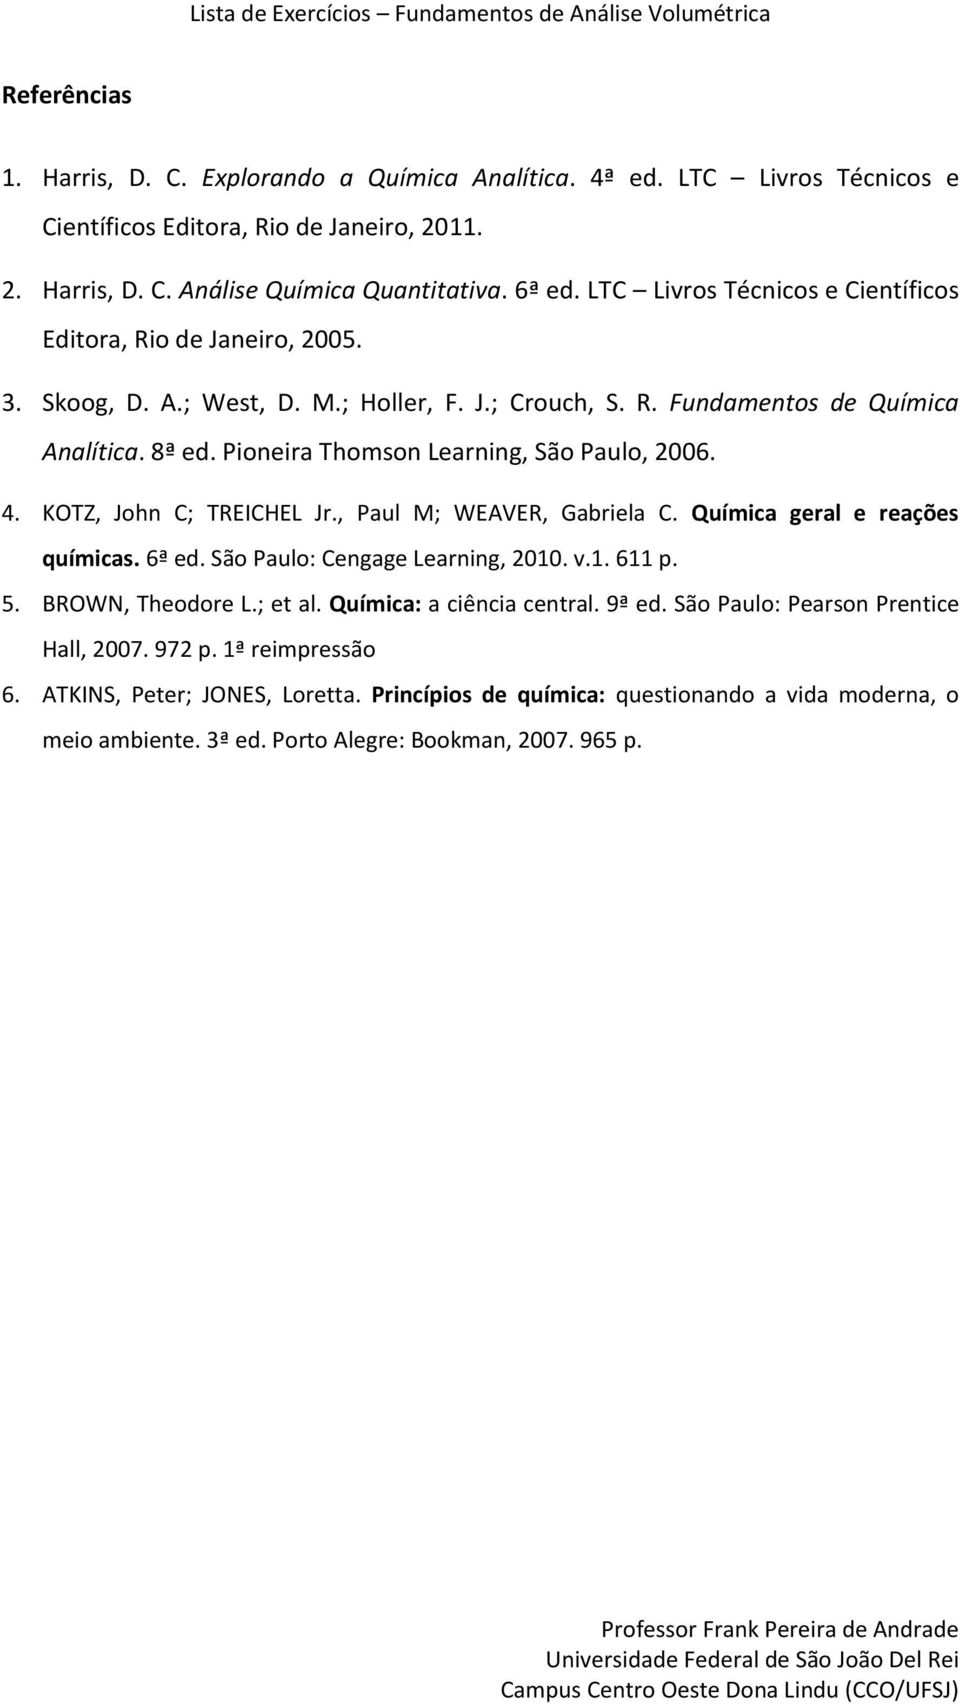 Pioneira Thomson Learning, São Paulo, 2006. 4. KOTZ, John C; TREICHEL Jr., Paul M; WEAVER, Gabriela C. Química geral e reações químicas. 6ª ed. São Paulo: Cengage Learning, 2010. v.1. 611 p. 5.